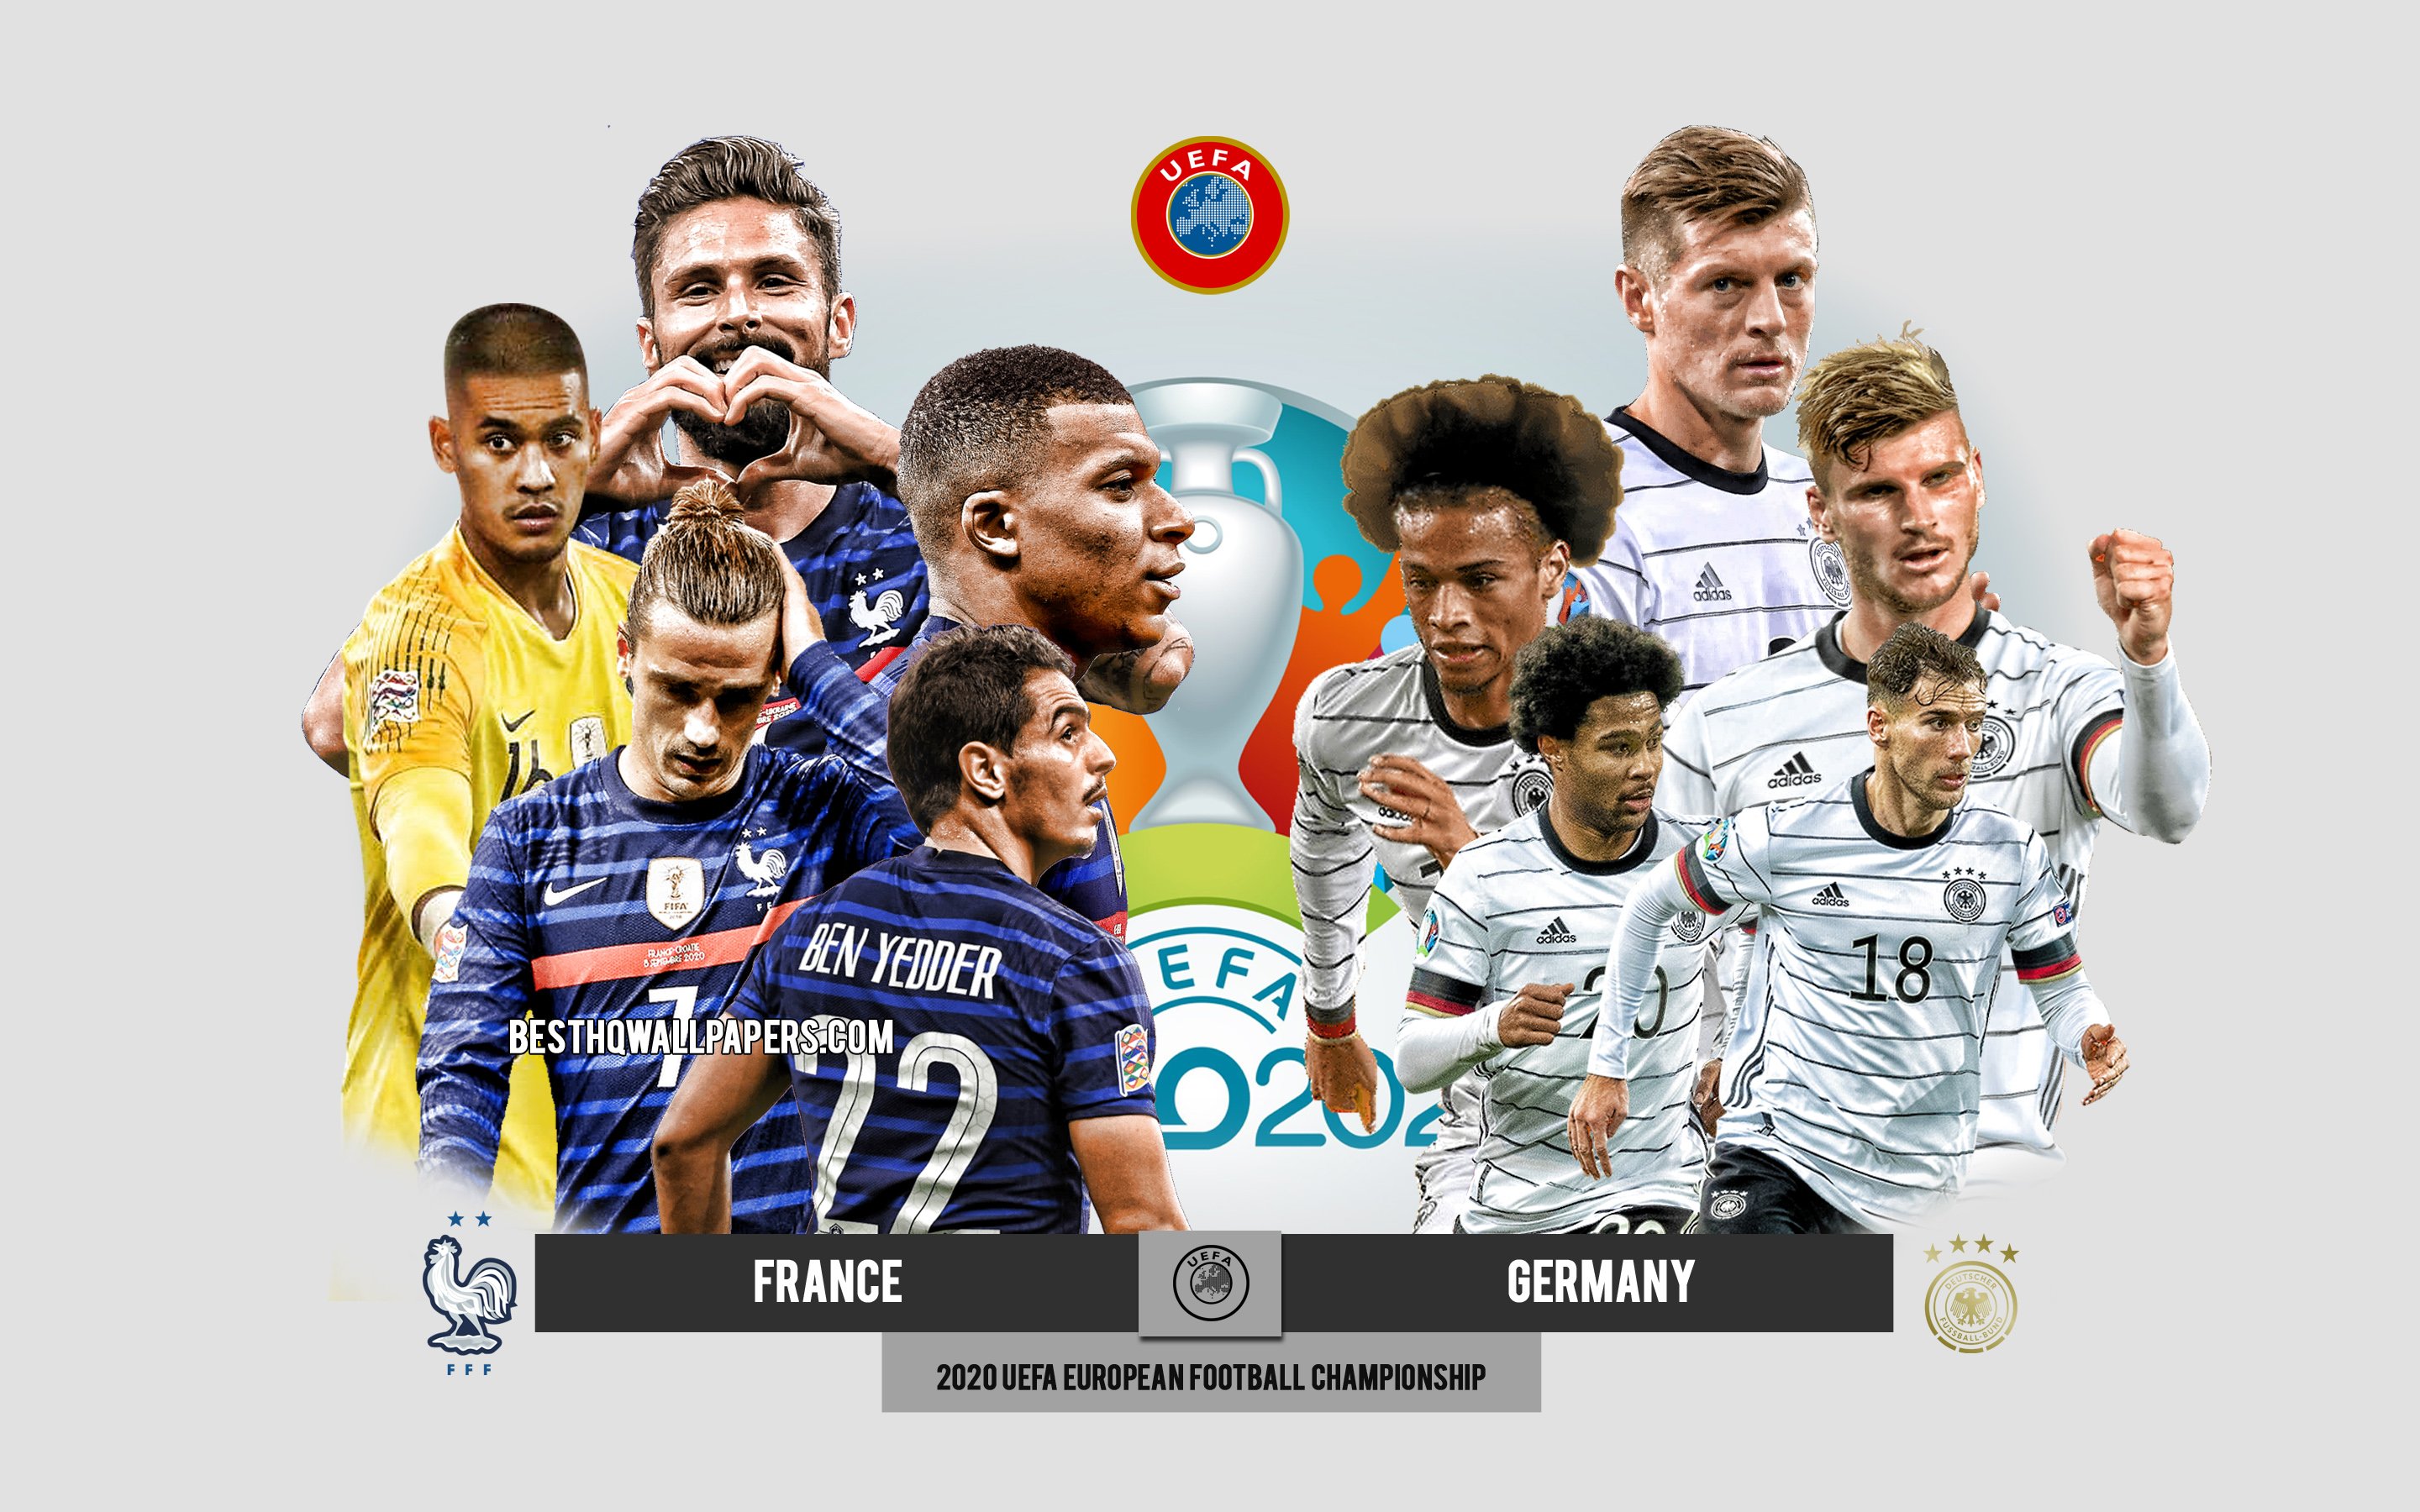 ダウンロード画像 フランス対ドイツ Uefaユーロ プレビュー 宣伝用の資料 サッカー選手 ユーロ サッカーの試合 フランス代表サッカーチーム ドイツ代表サッカーチーム 画面の解像度 x1800 壁紙デスクトップ上